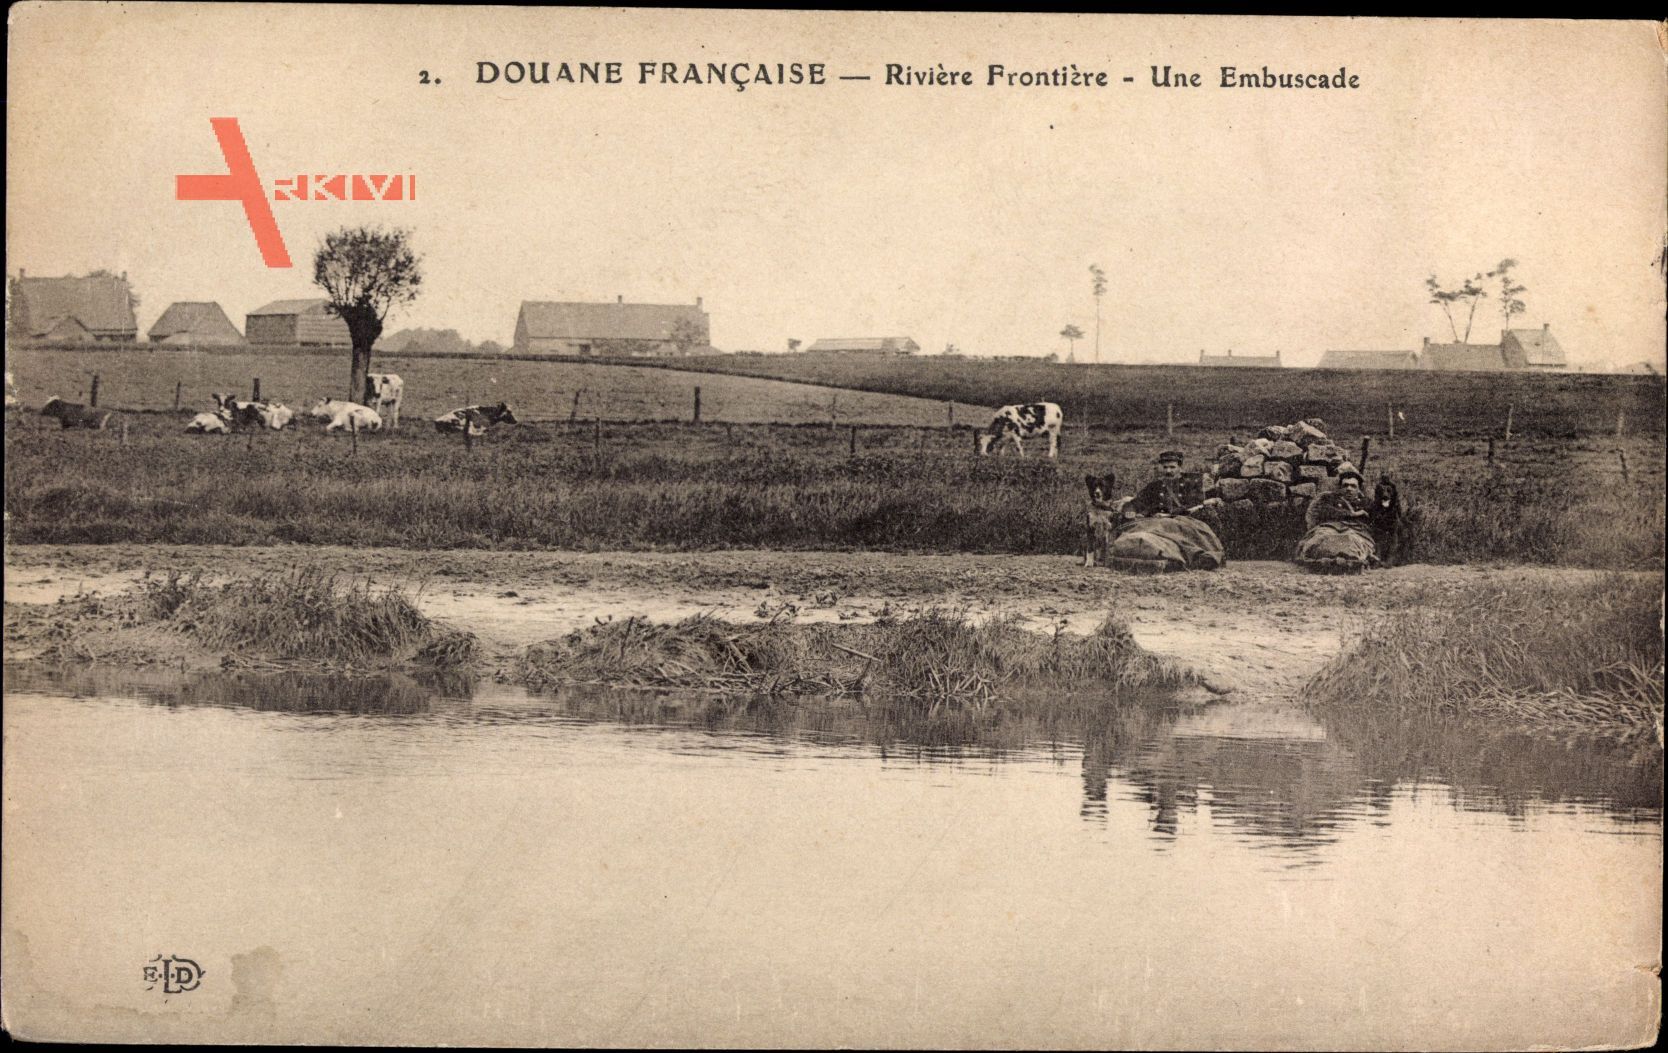 Douane Francaise, Rivière Frontière, Une Embuscade, Grenzpolizei am Fluss